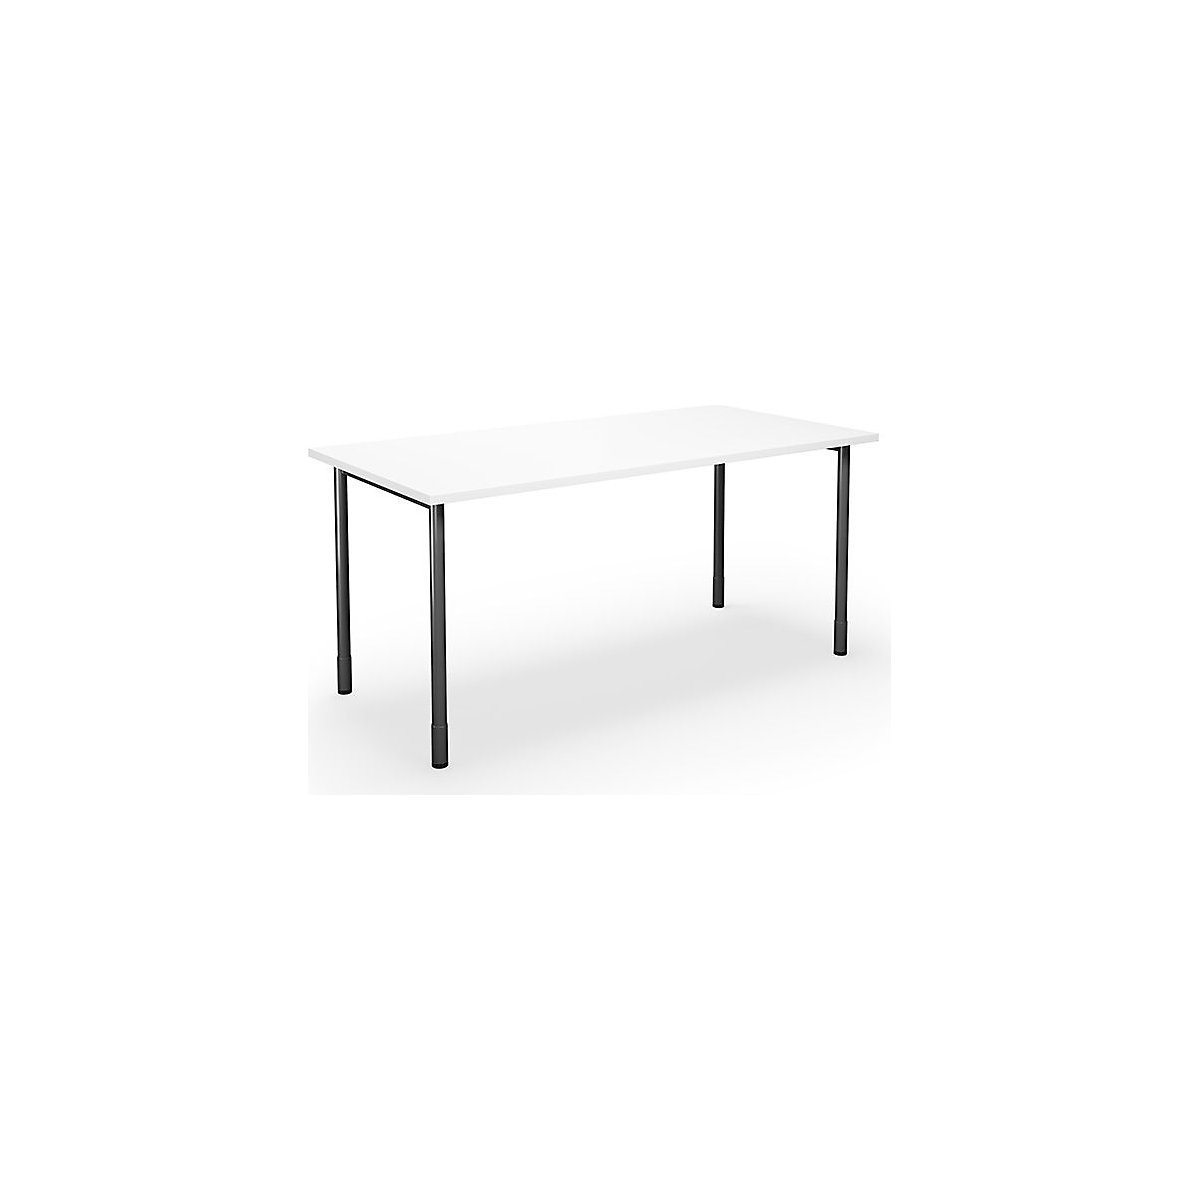 DUO-C multi-purpose desk, straight tabletop, WxD 1600 x 800 mm, white, black-5